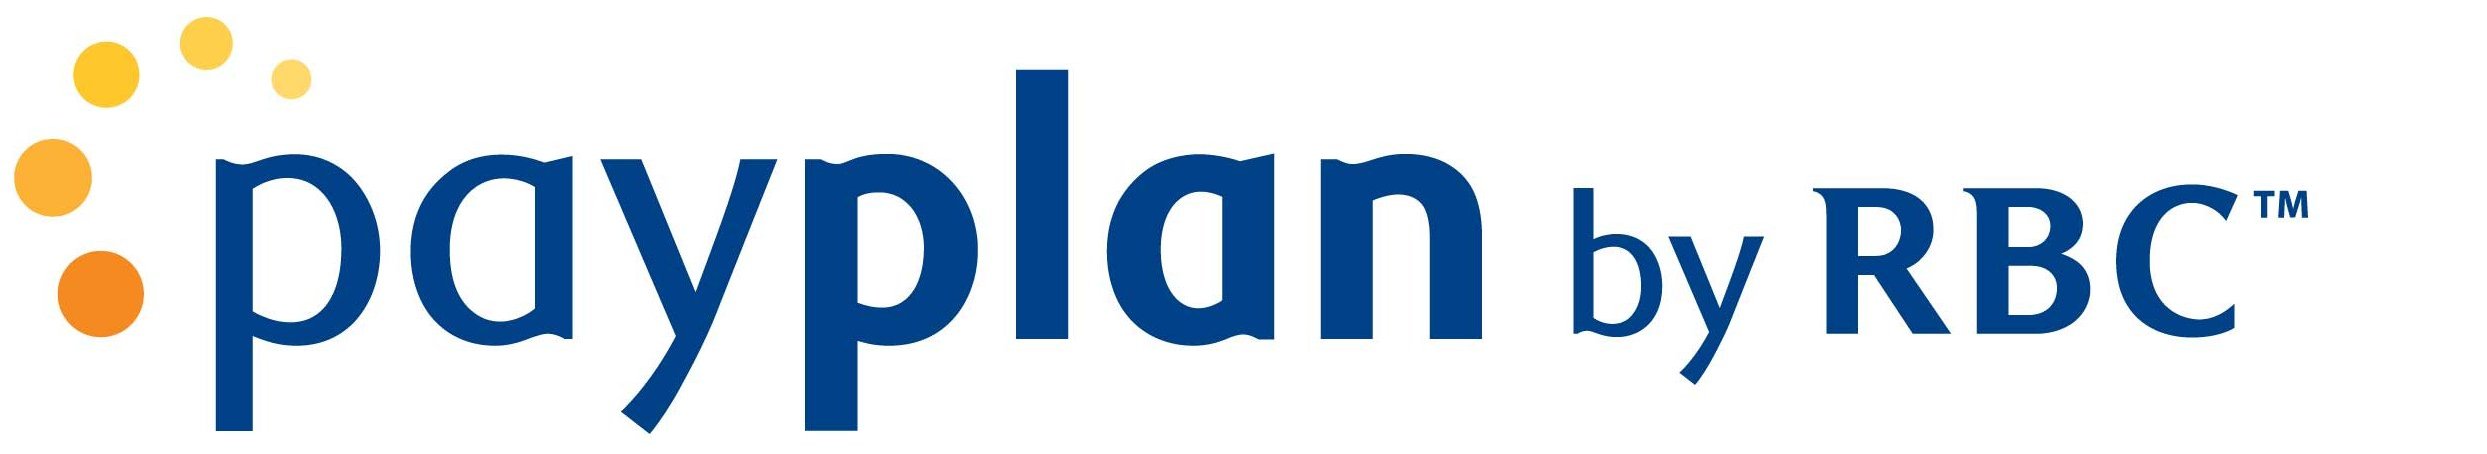 Payplan logo